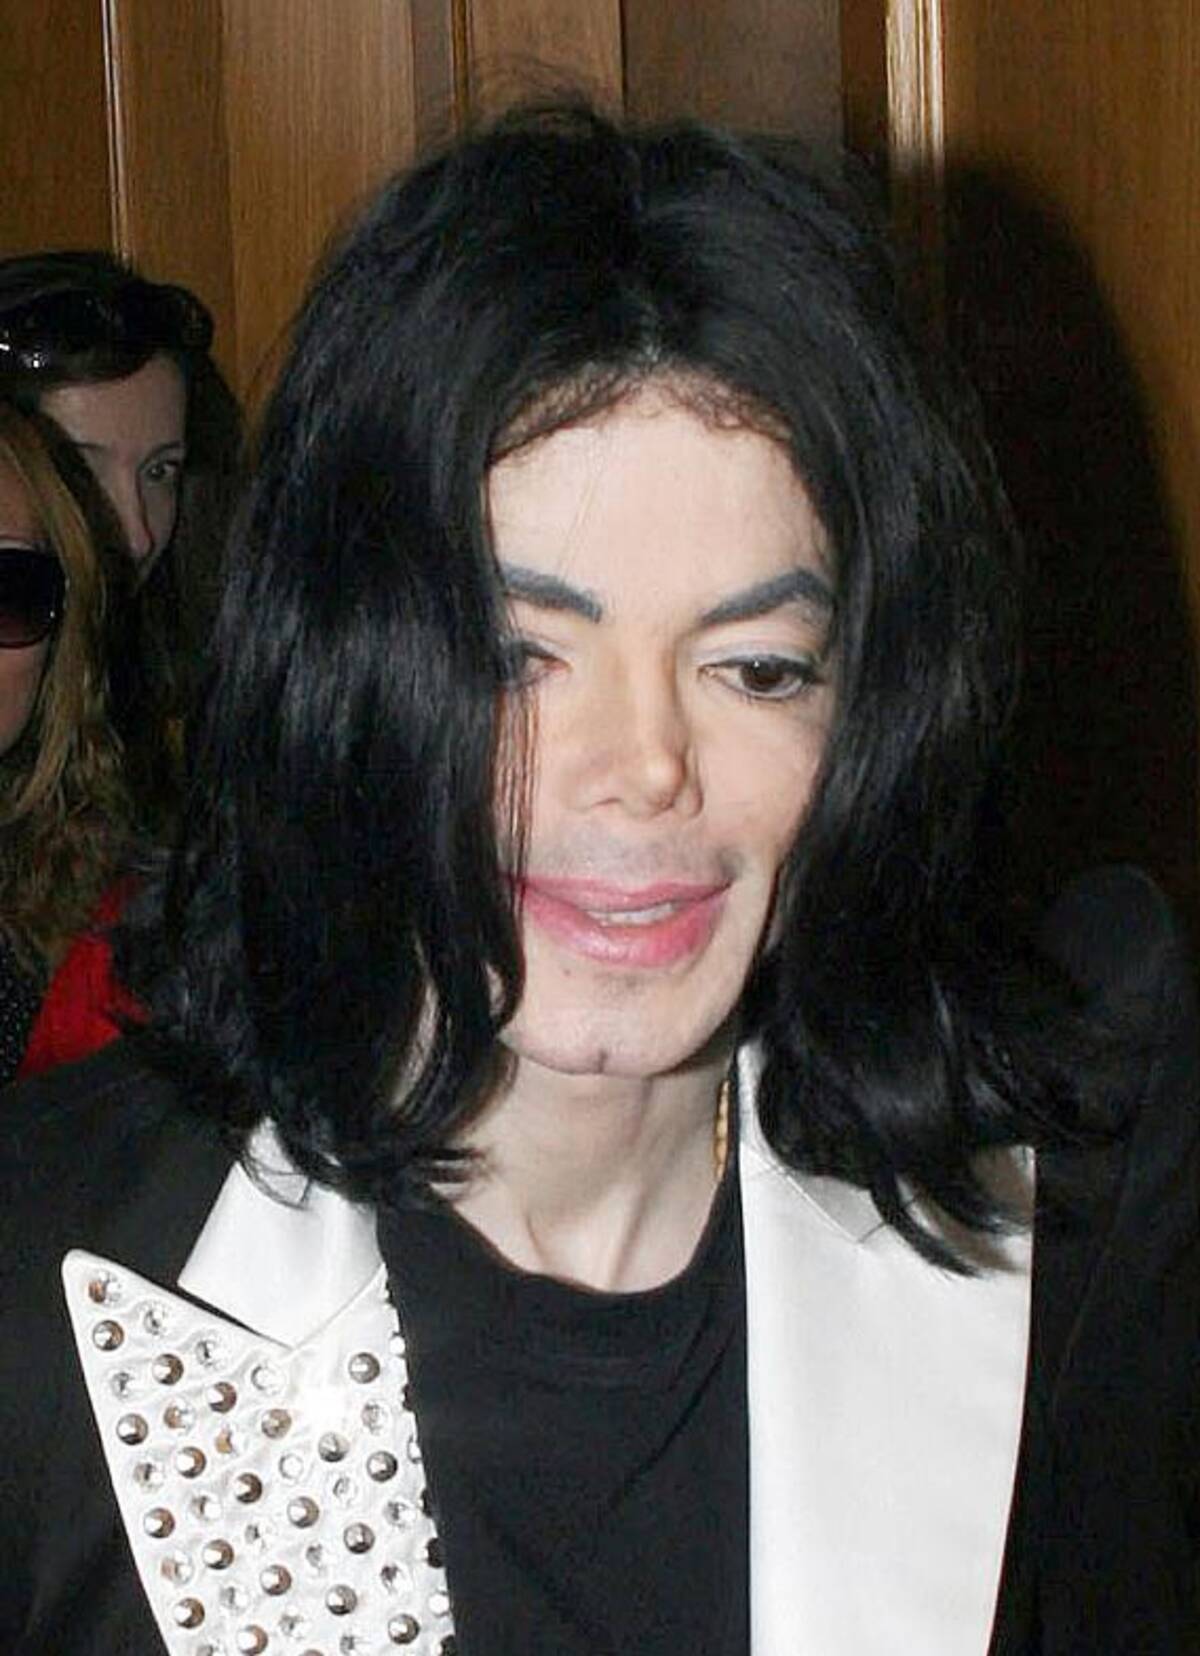 イタすぎるセレブ達 故マイケル ジャクソンに自殺願望 何が彼をそこまで追い詰めたのか 11年1月5日 エキサイトニュース